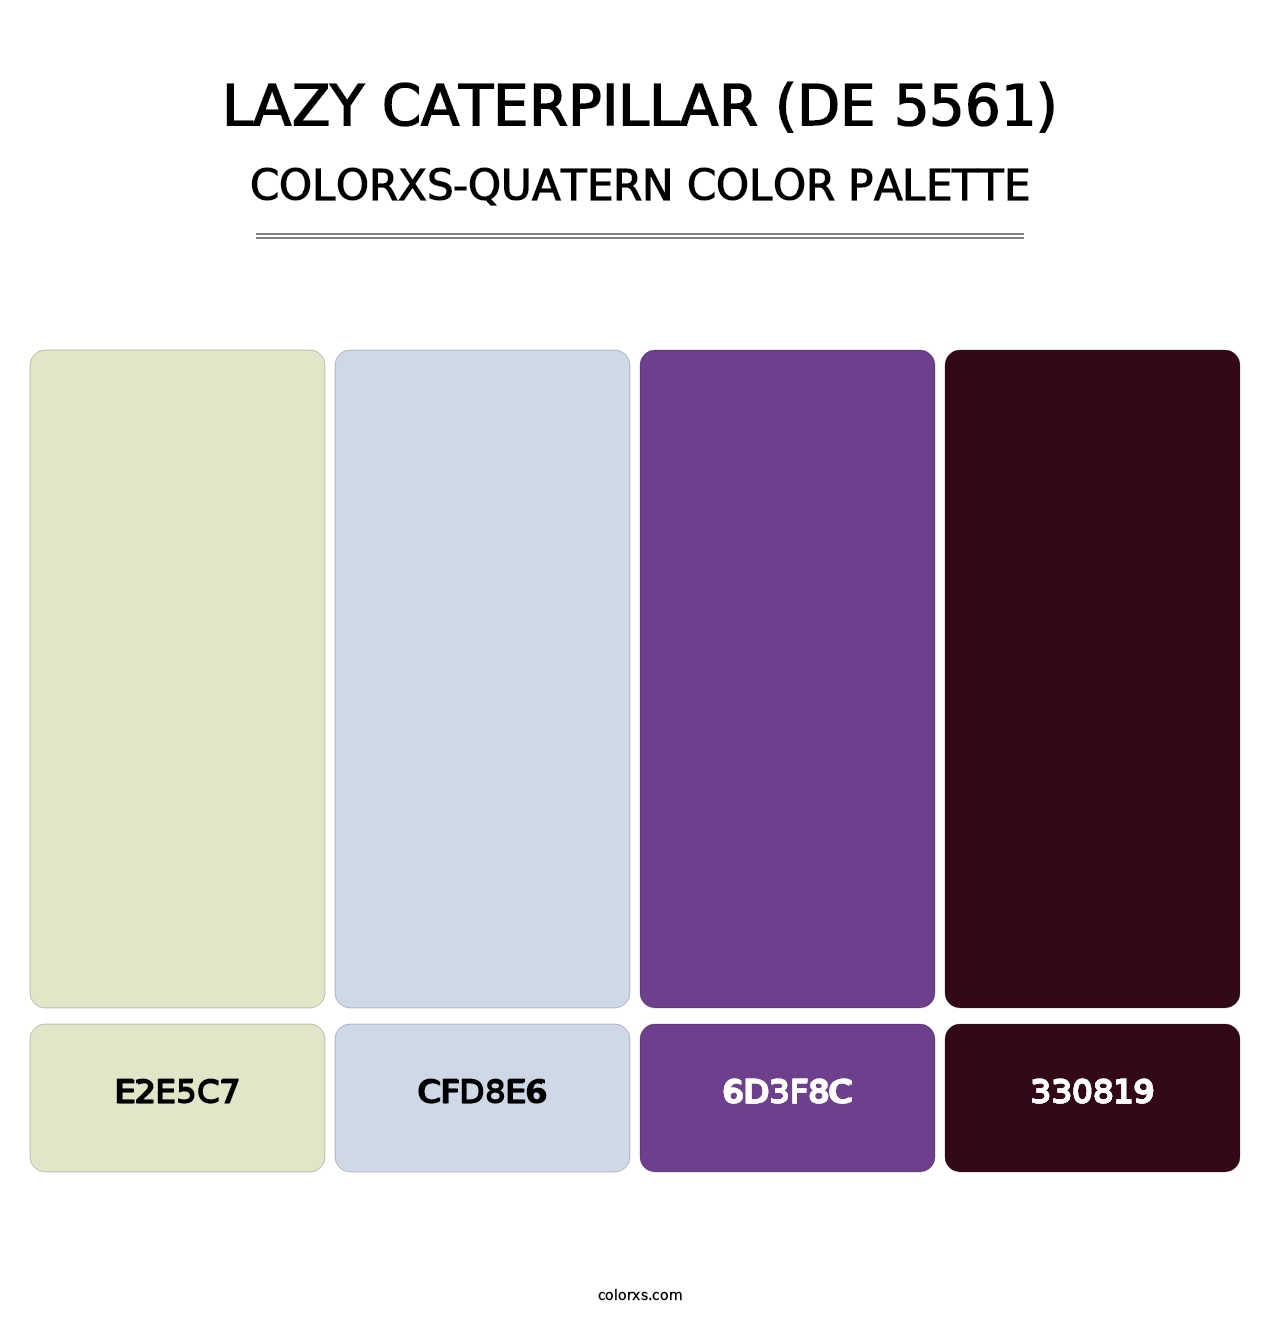 Lazy Caterpillar (DE 5561) - Colorxs Quatern Palette